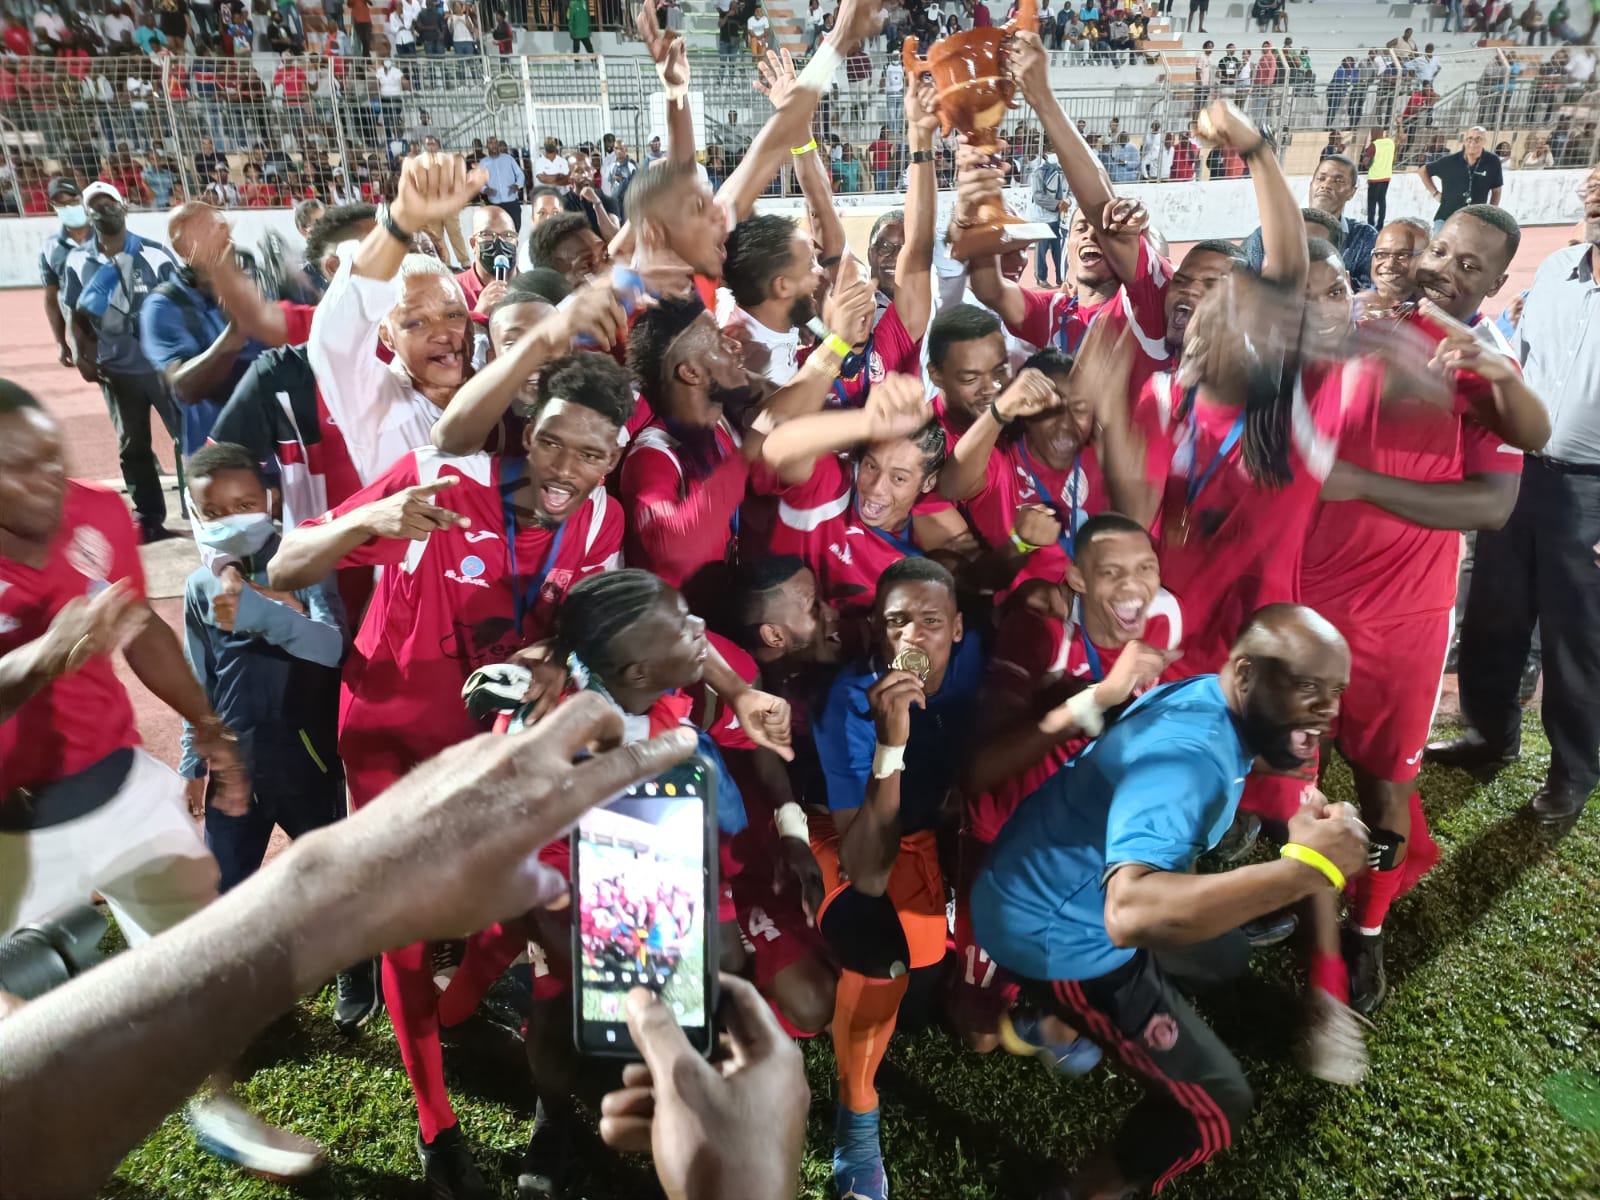     Le CO Trénelle (H) et le RC Rivière-Pilote (F) remportent la Coupe de Martinique 2022

